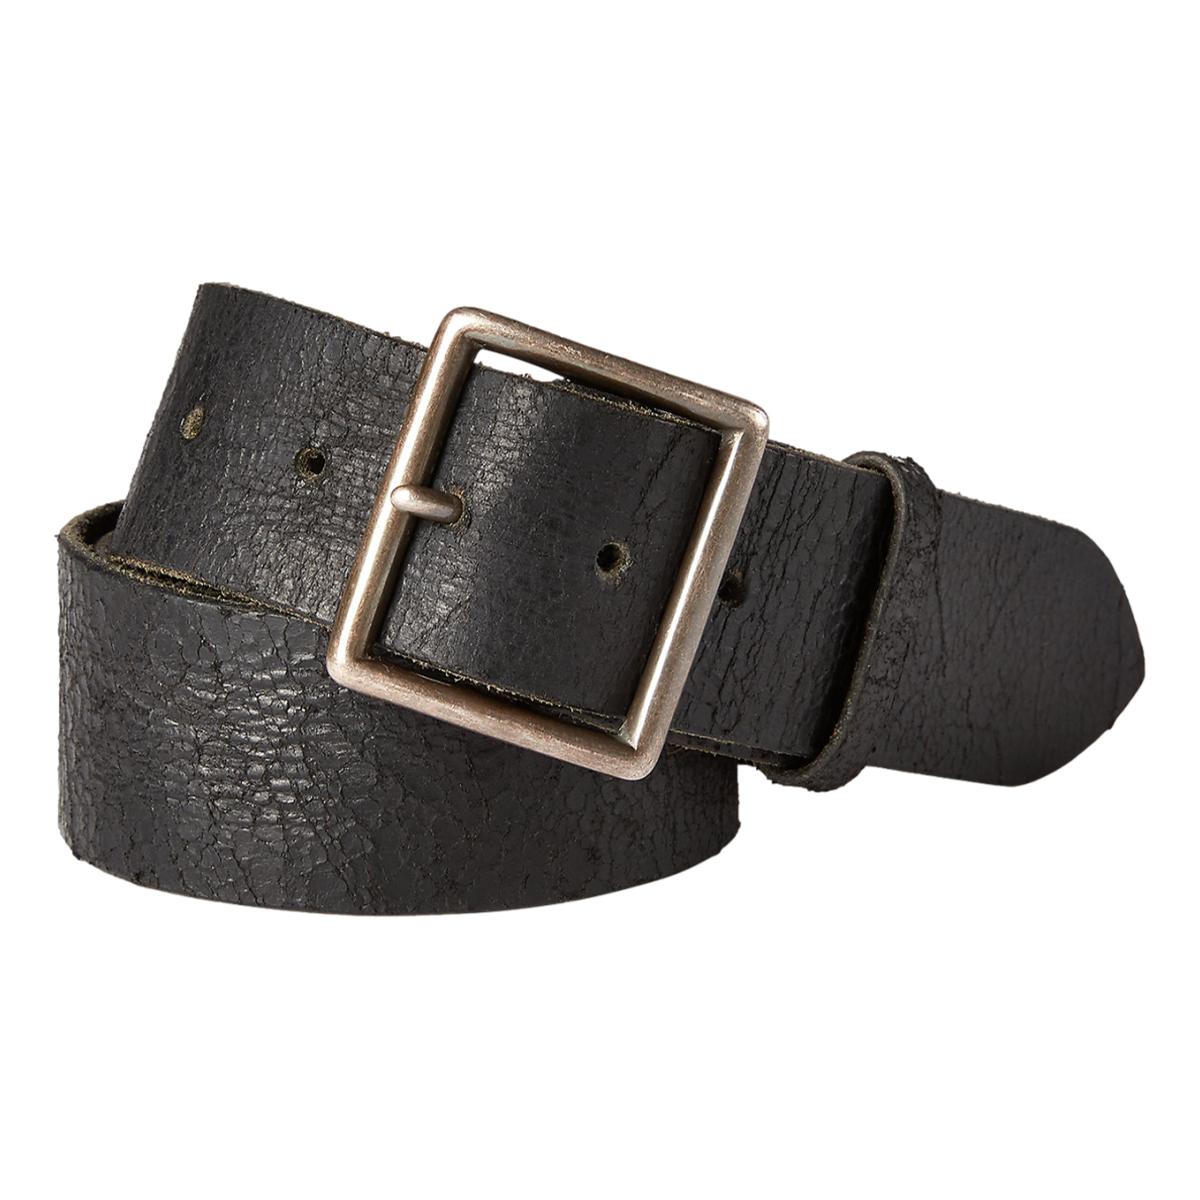 https://milworks.co/cdn/shop/files/distressed-leather-belt-vintage-black-belts-485_1200x1200.jpg?v=1690049044